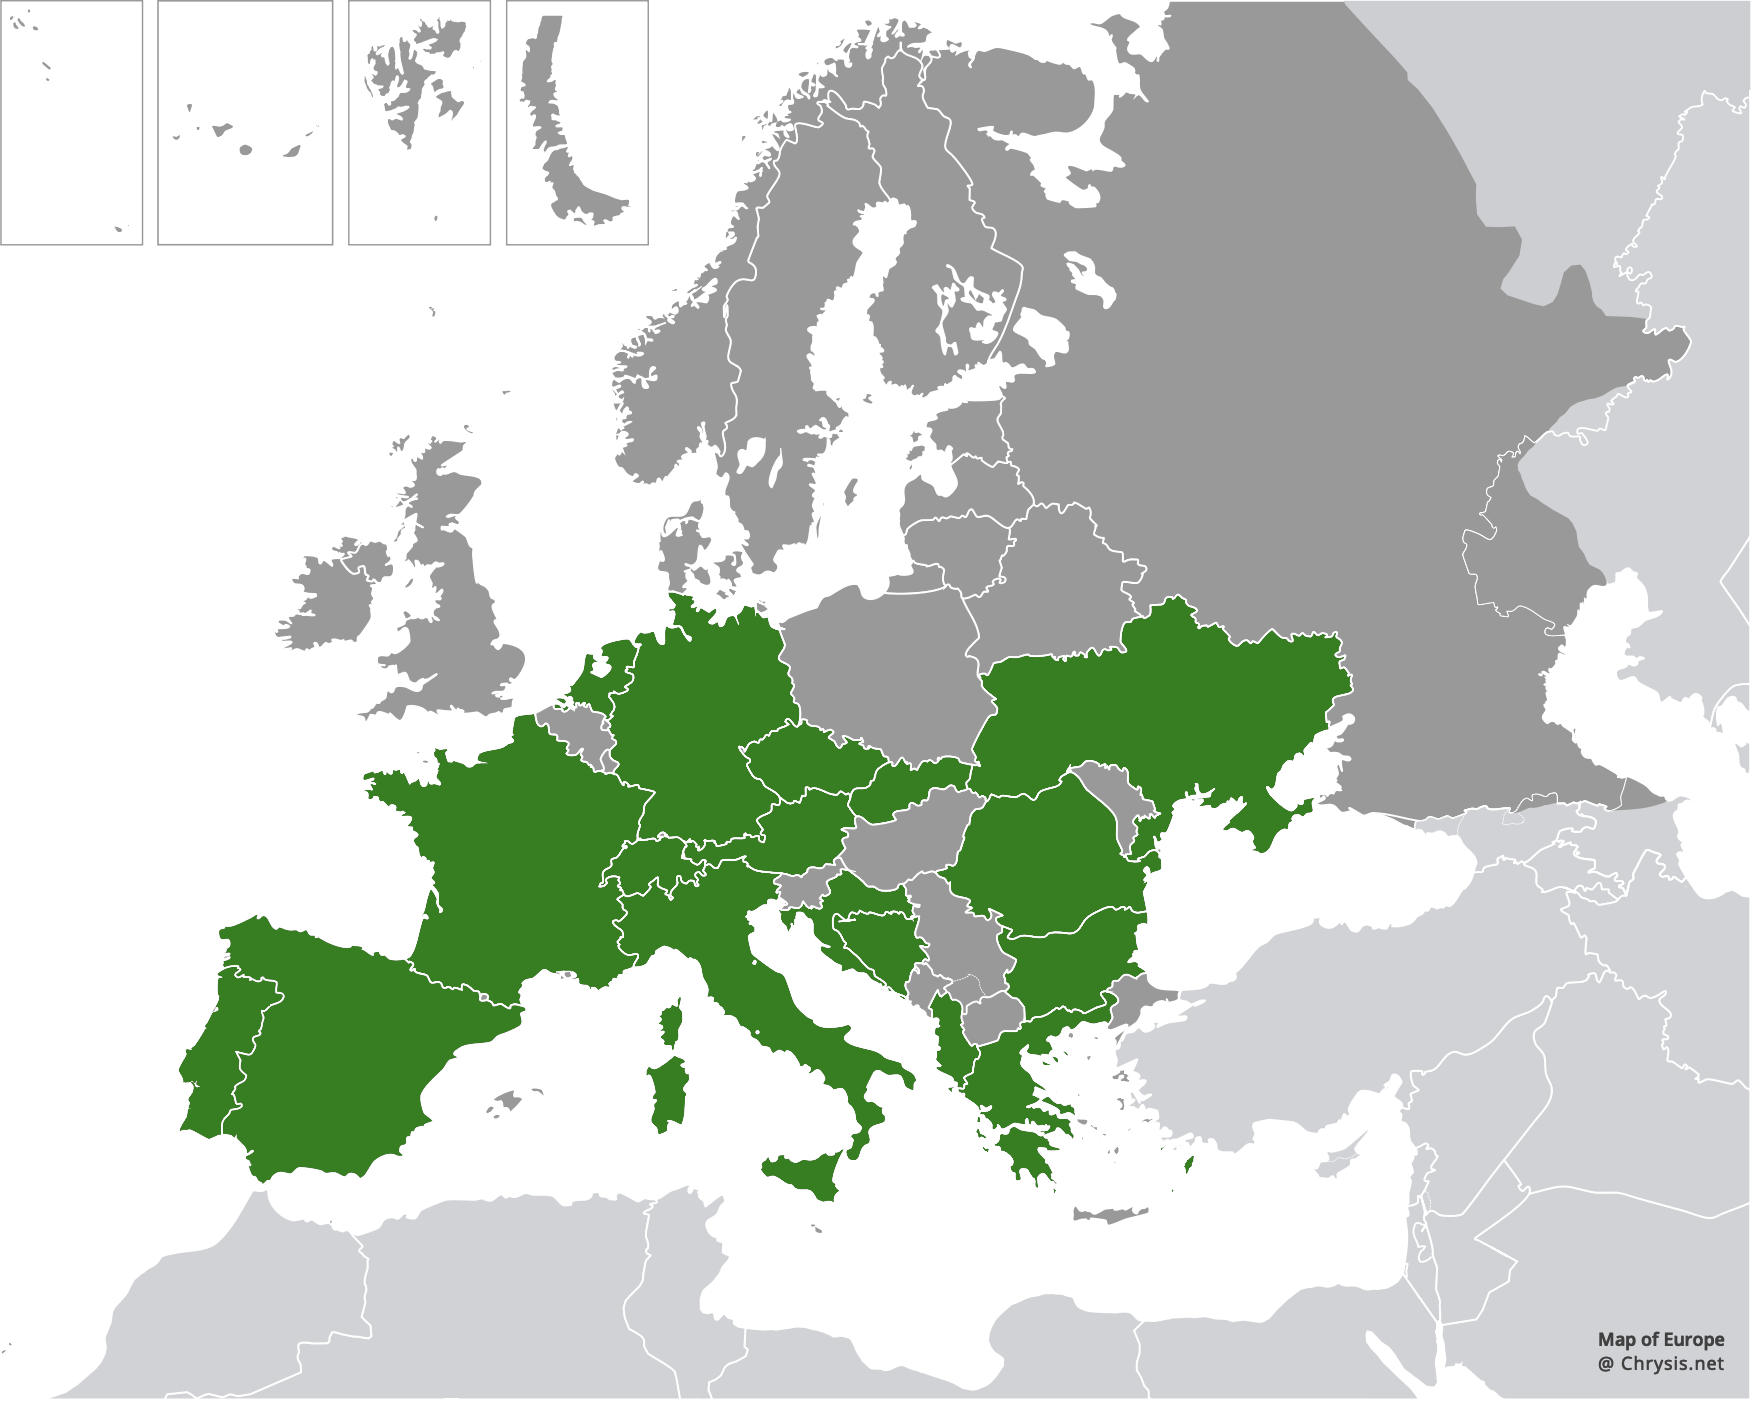 European distribution of Chrysis comparata